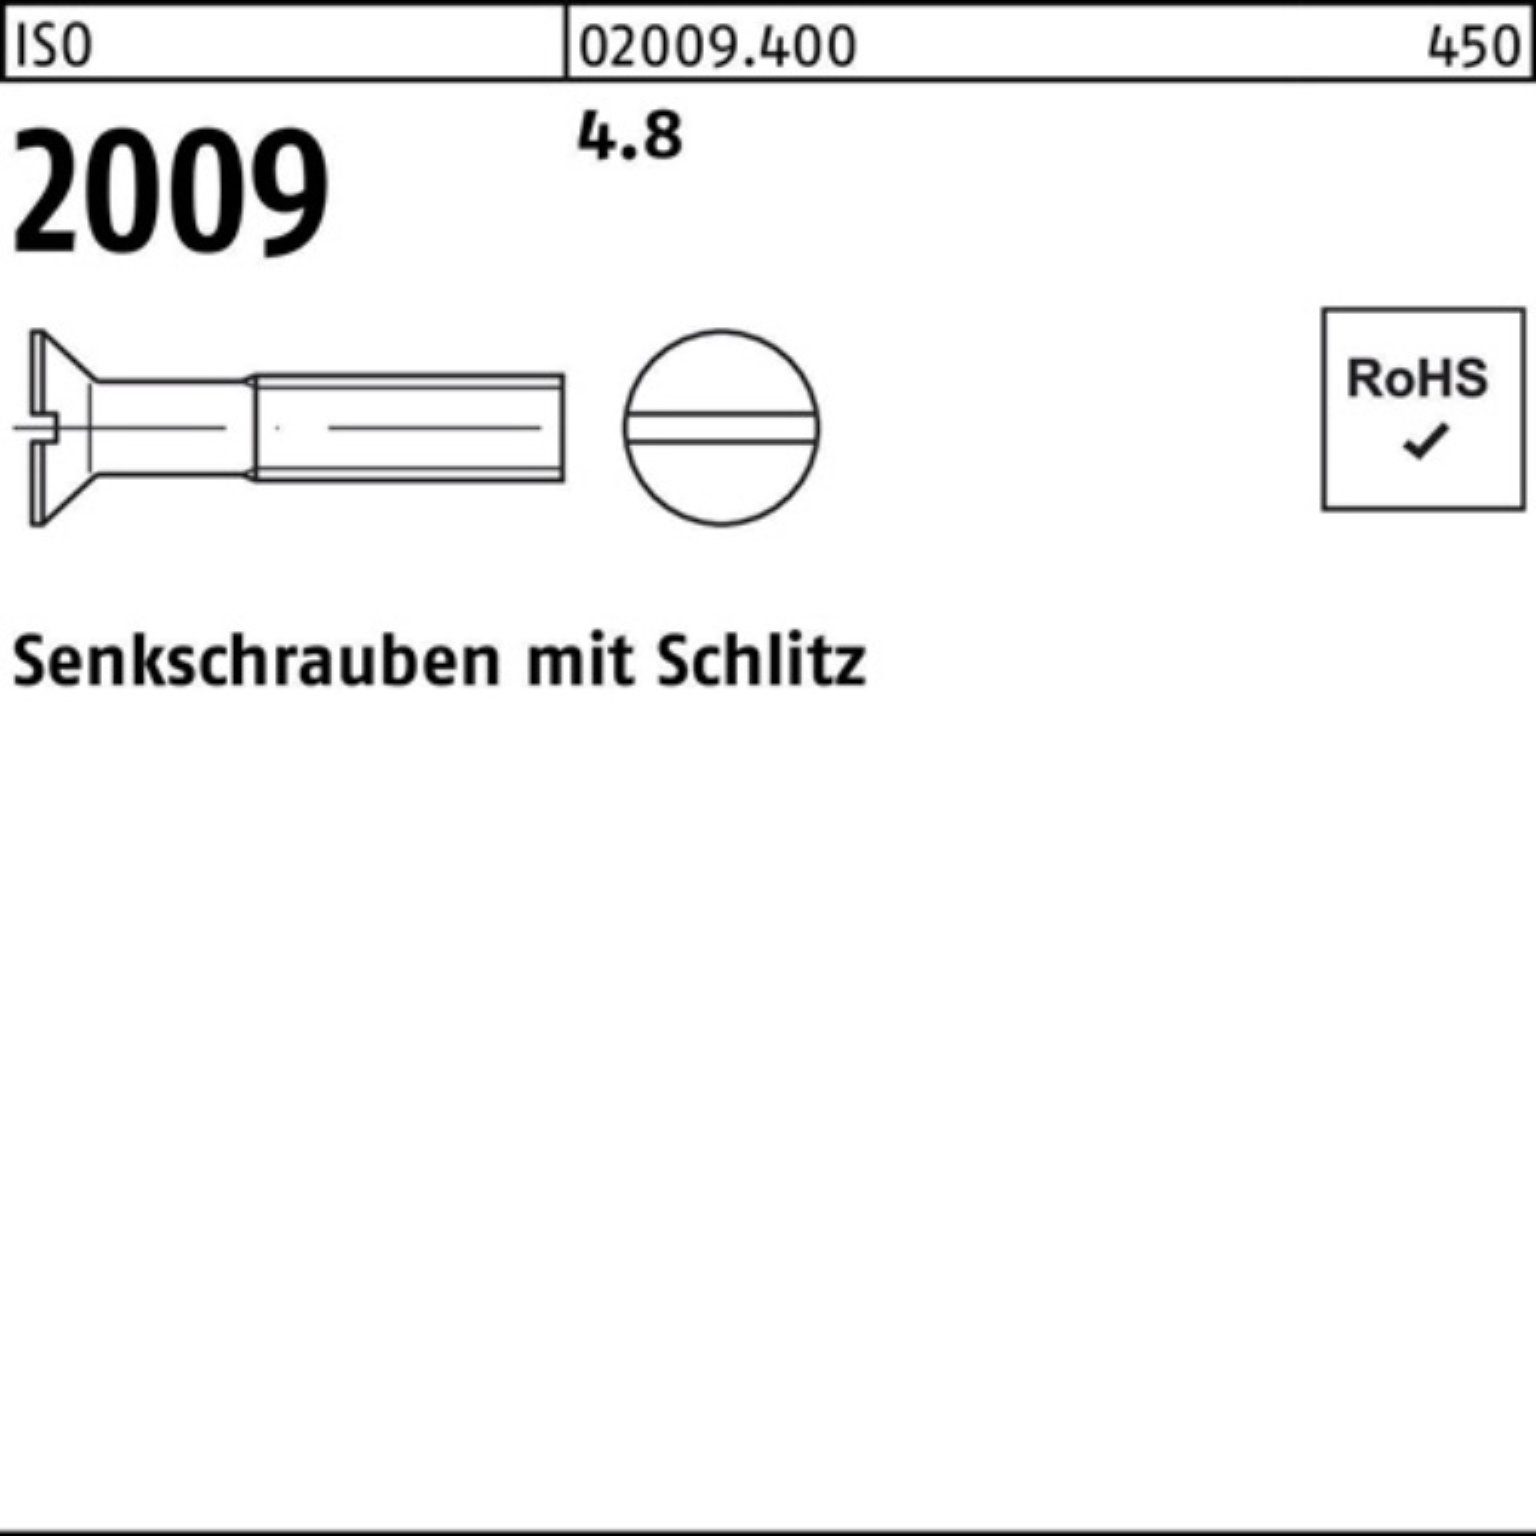 Senkschraube Schlitz 1000er Pack 1000 Reyher 2009 20 ISO Senkschraube M6x 4.8 Stück ISO 2